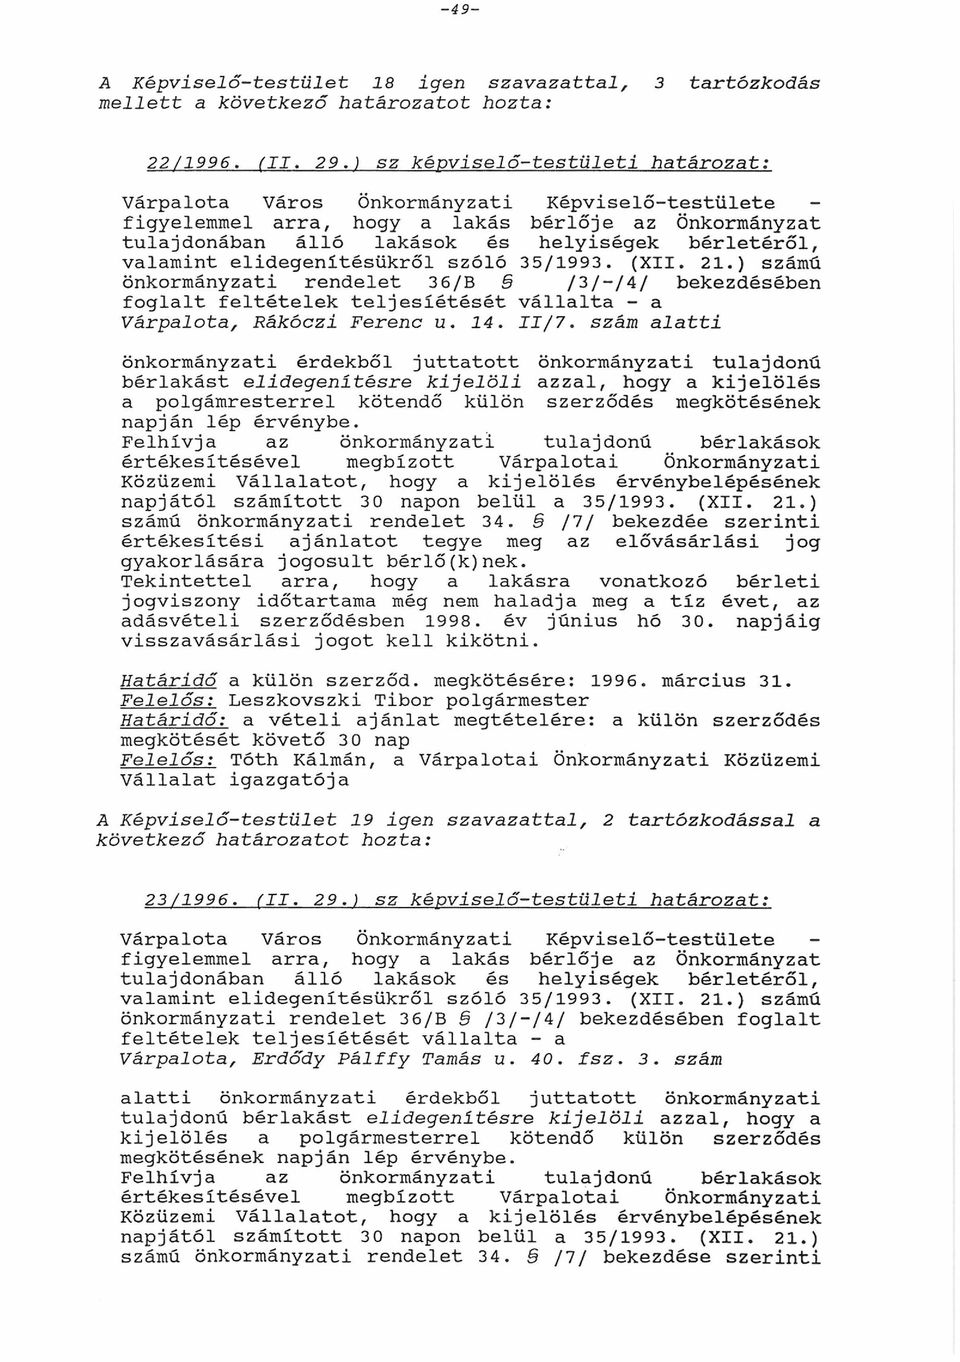 Képviselő-testülete bérlője z Önkormányzt helyiségek bérletéről, 35/1993. (XII. 21.) számú /3/ /4/ bekezdében válllt - II/7.